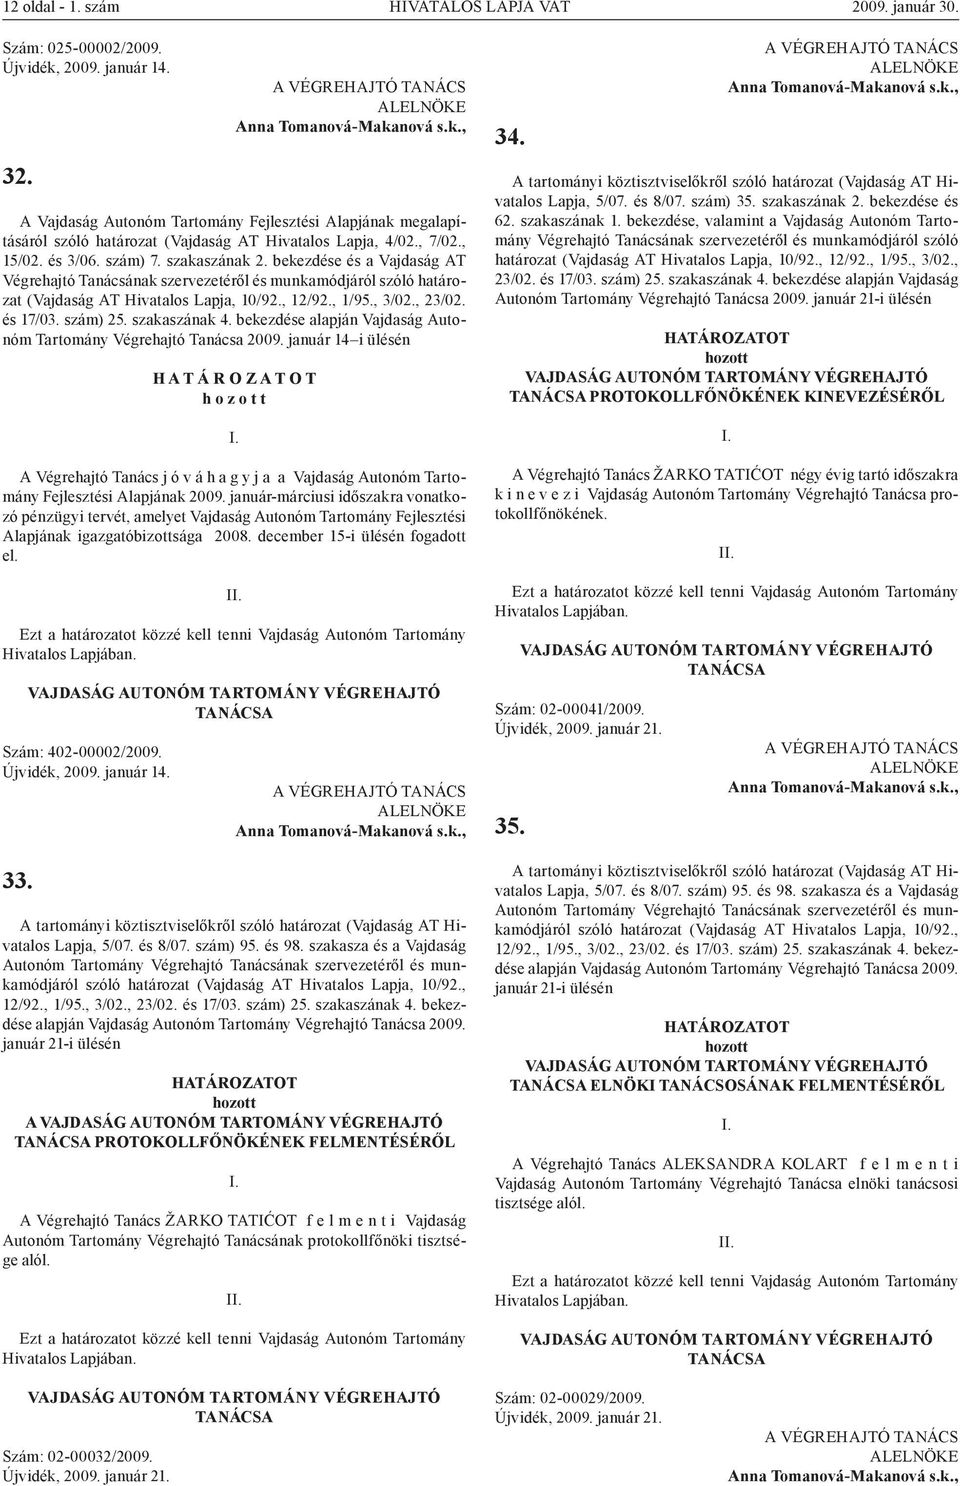 , 3/02., 23/02. és 17/03. szám) 25. szakaszának 4. bekezdése alapján Vajdaság Autonóm Tartomány Végrehajtó 2009.